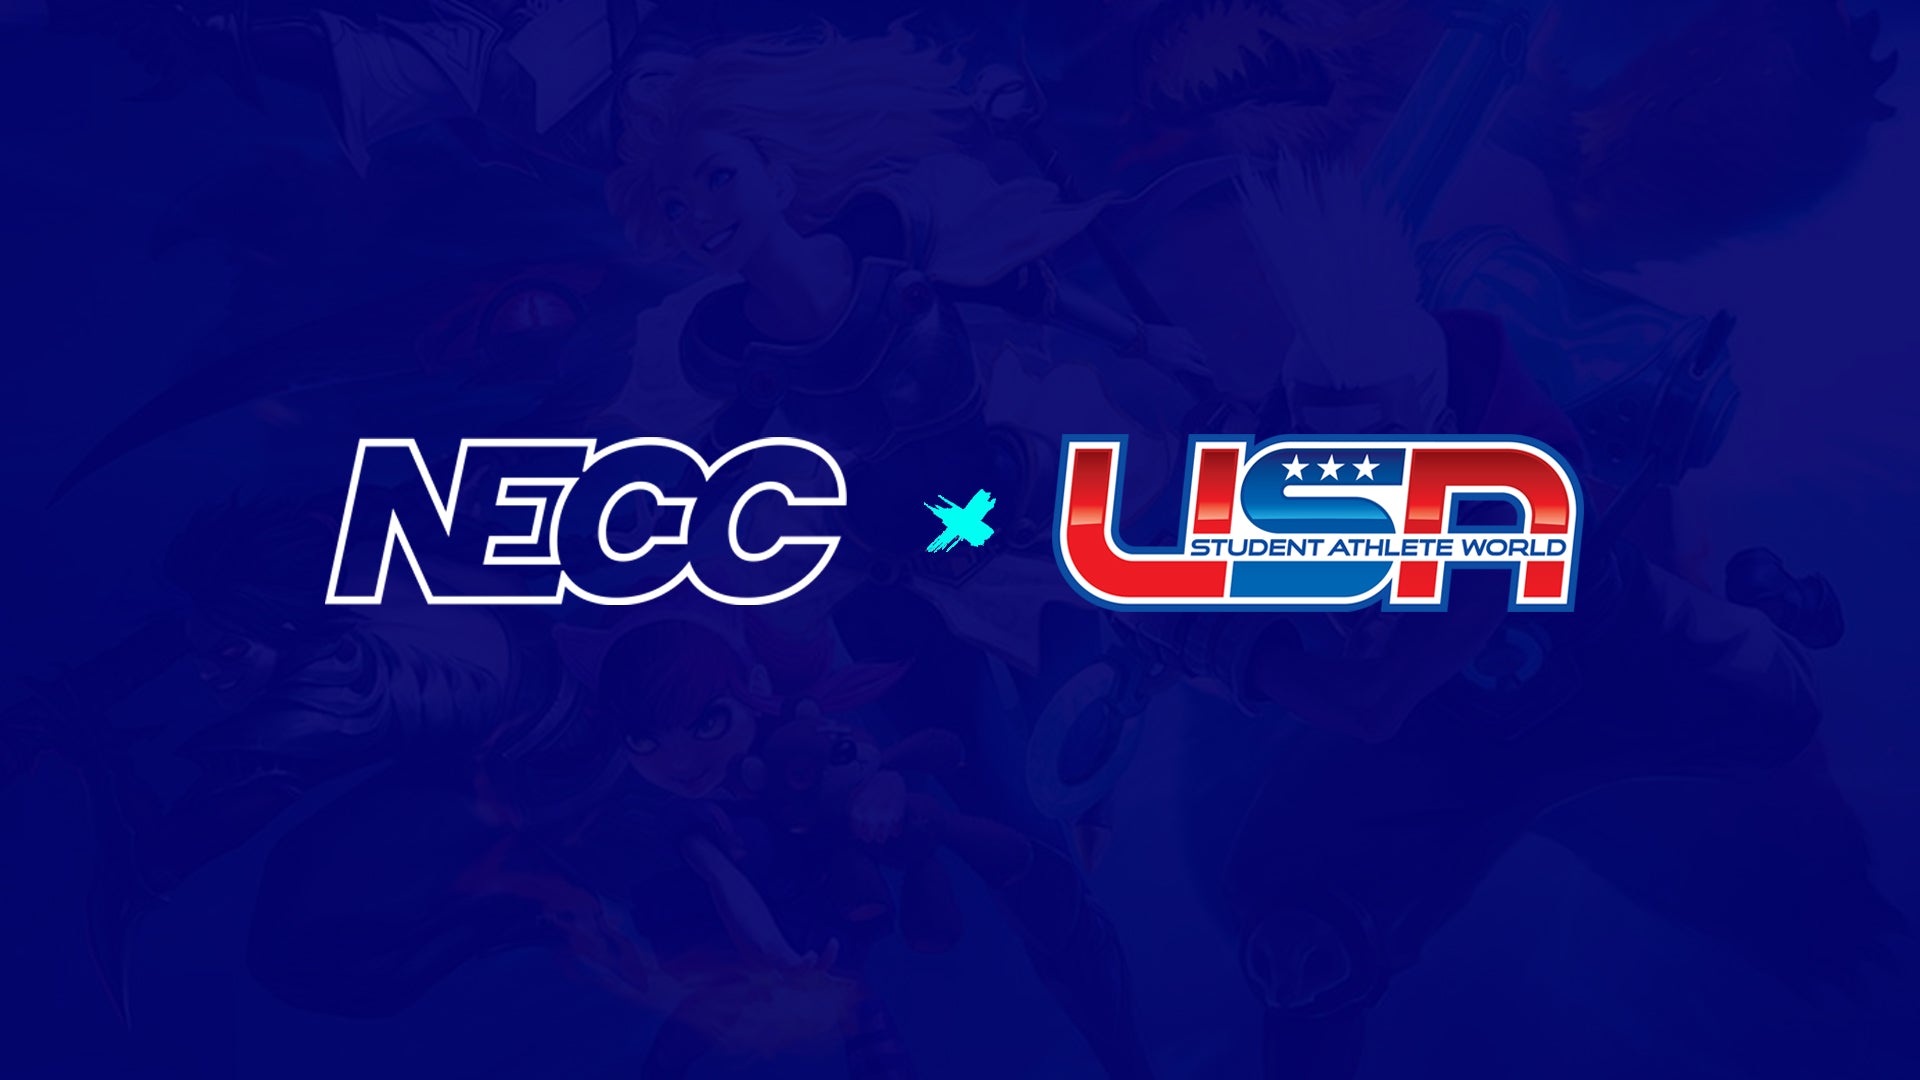 NECC Announces Partnership with STUDENTathleteWorld